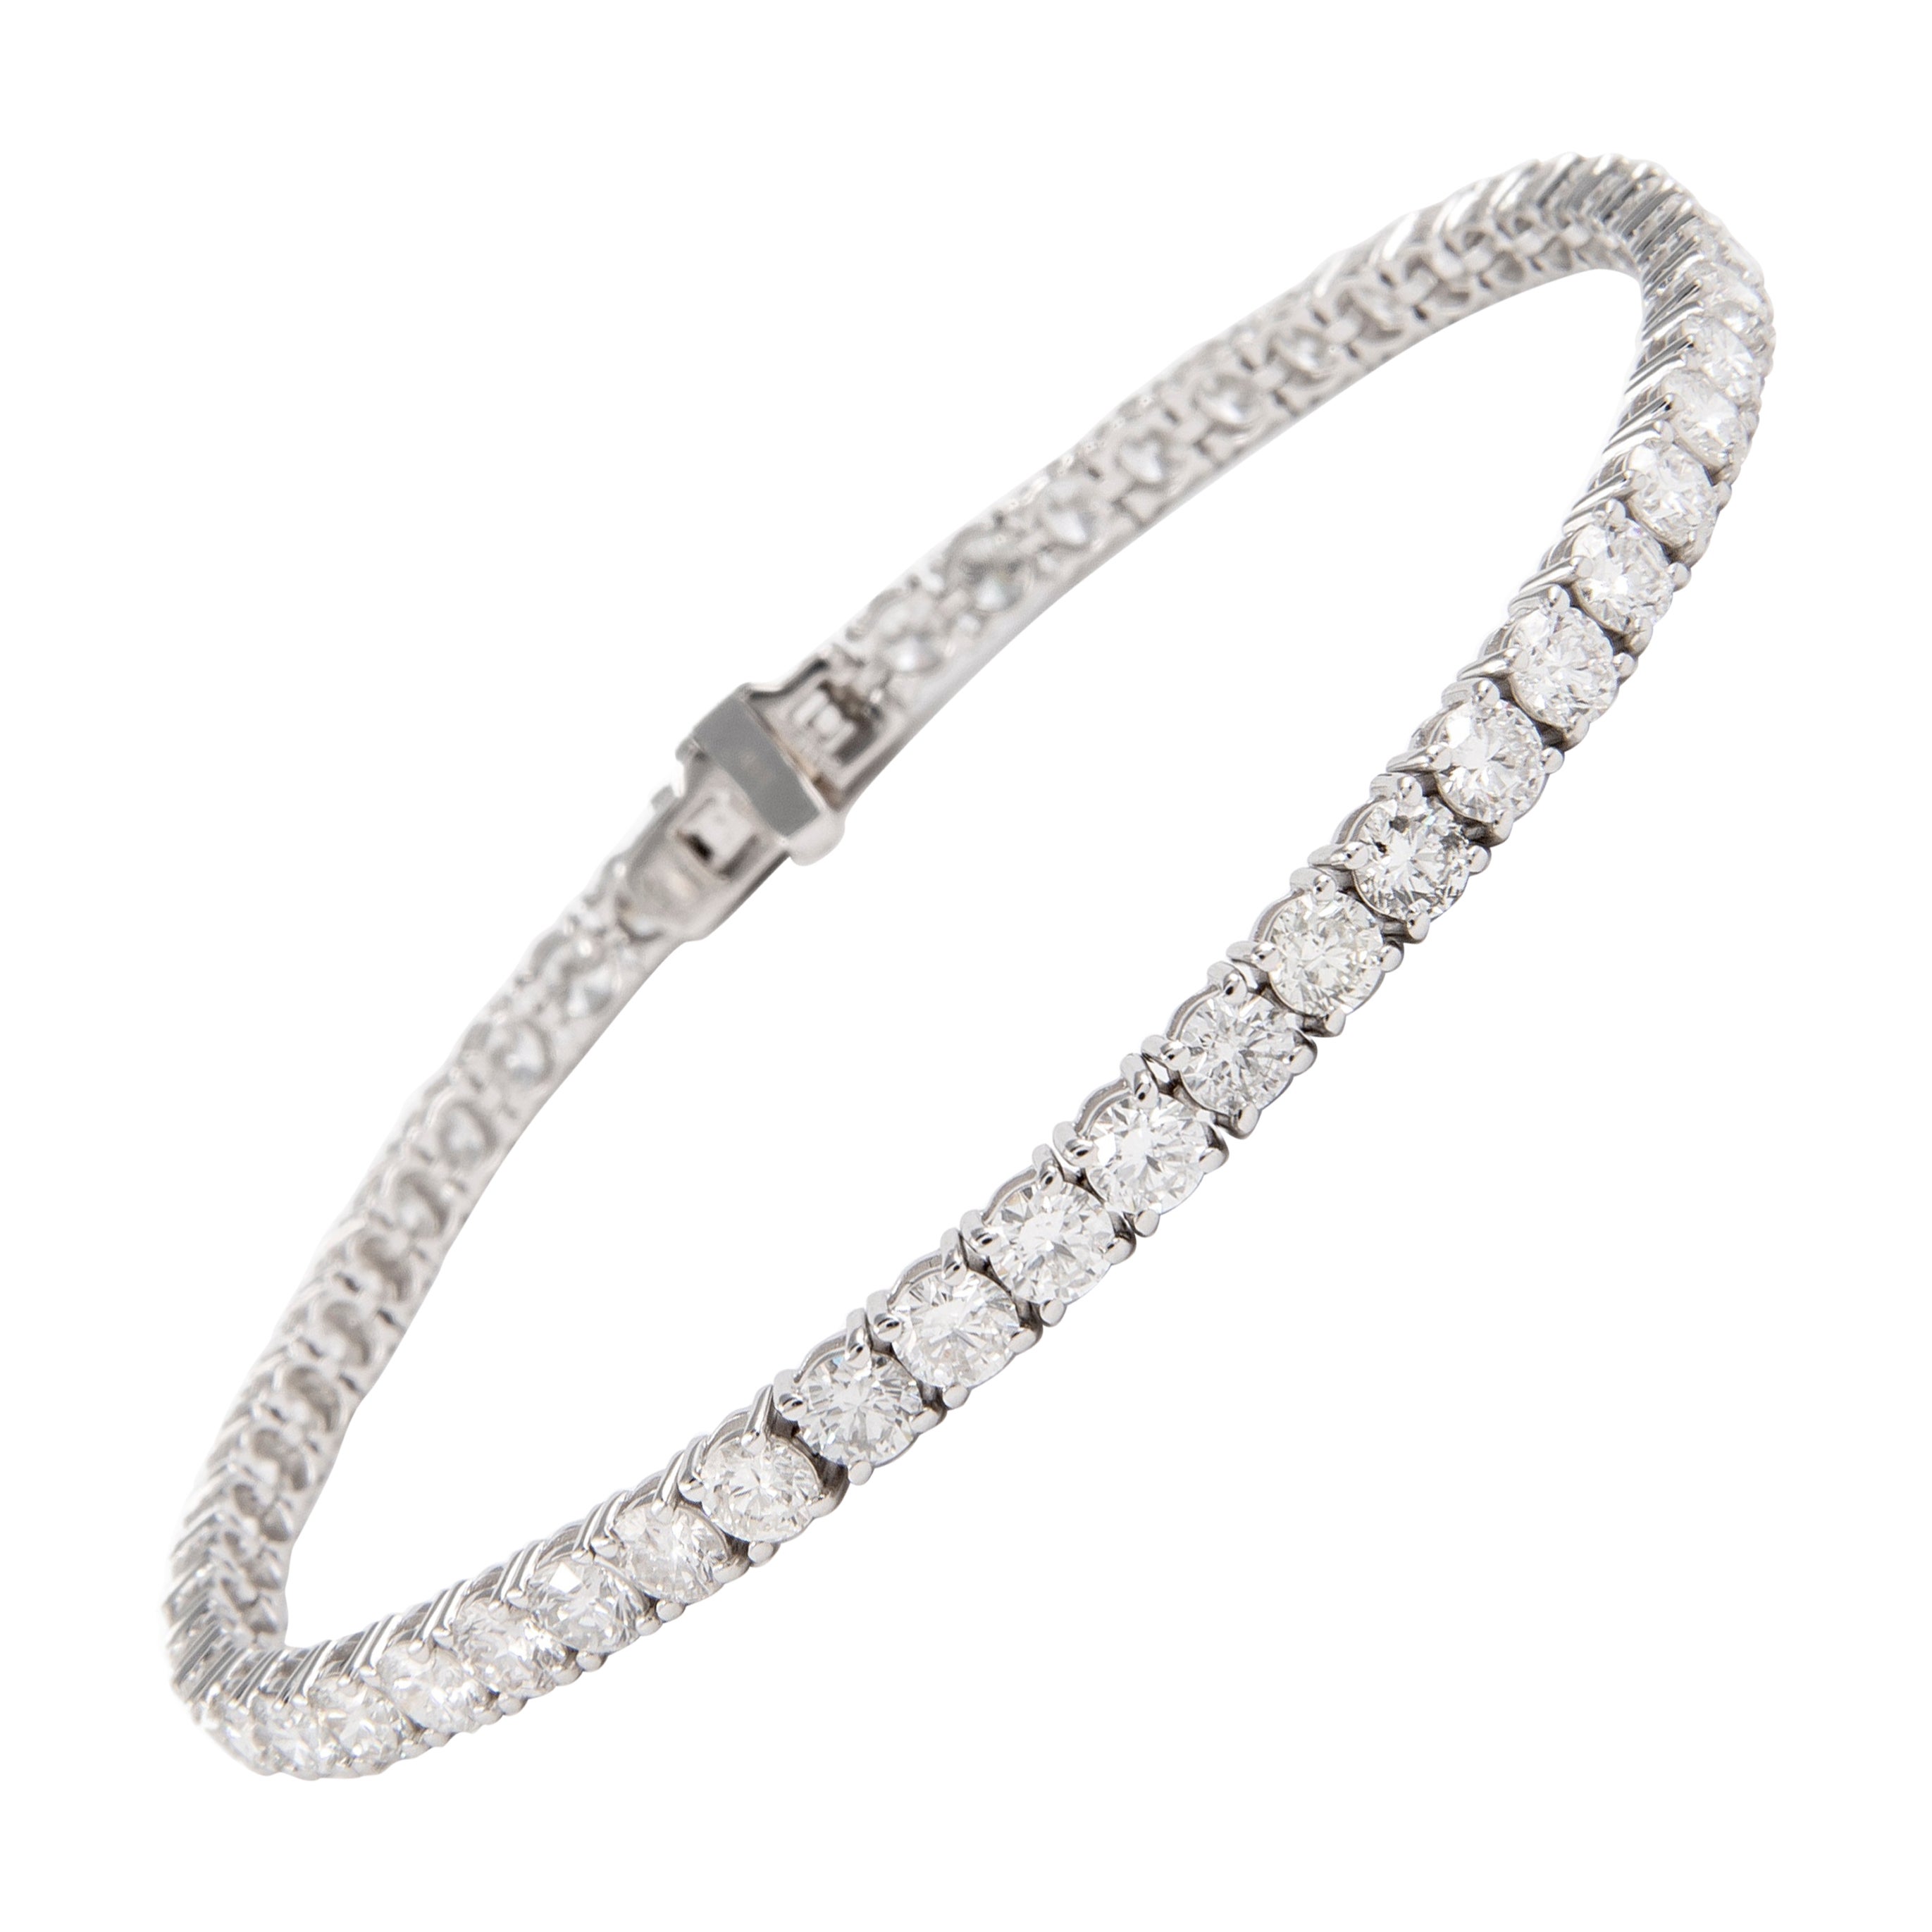 Alexander 6.83 Carats D-F Color Diamond Tennis Bracelet 18-Karat White Gold For Sale